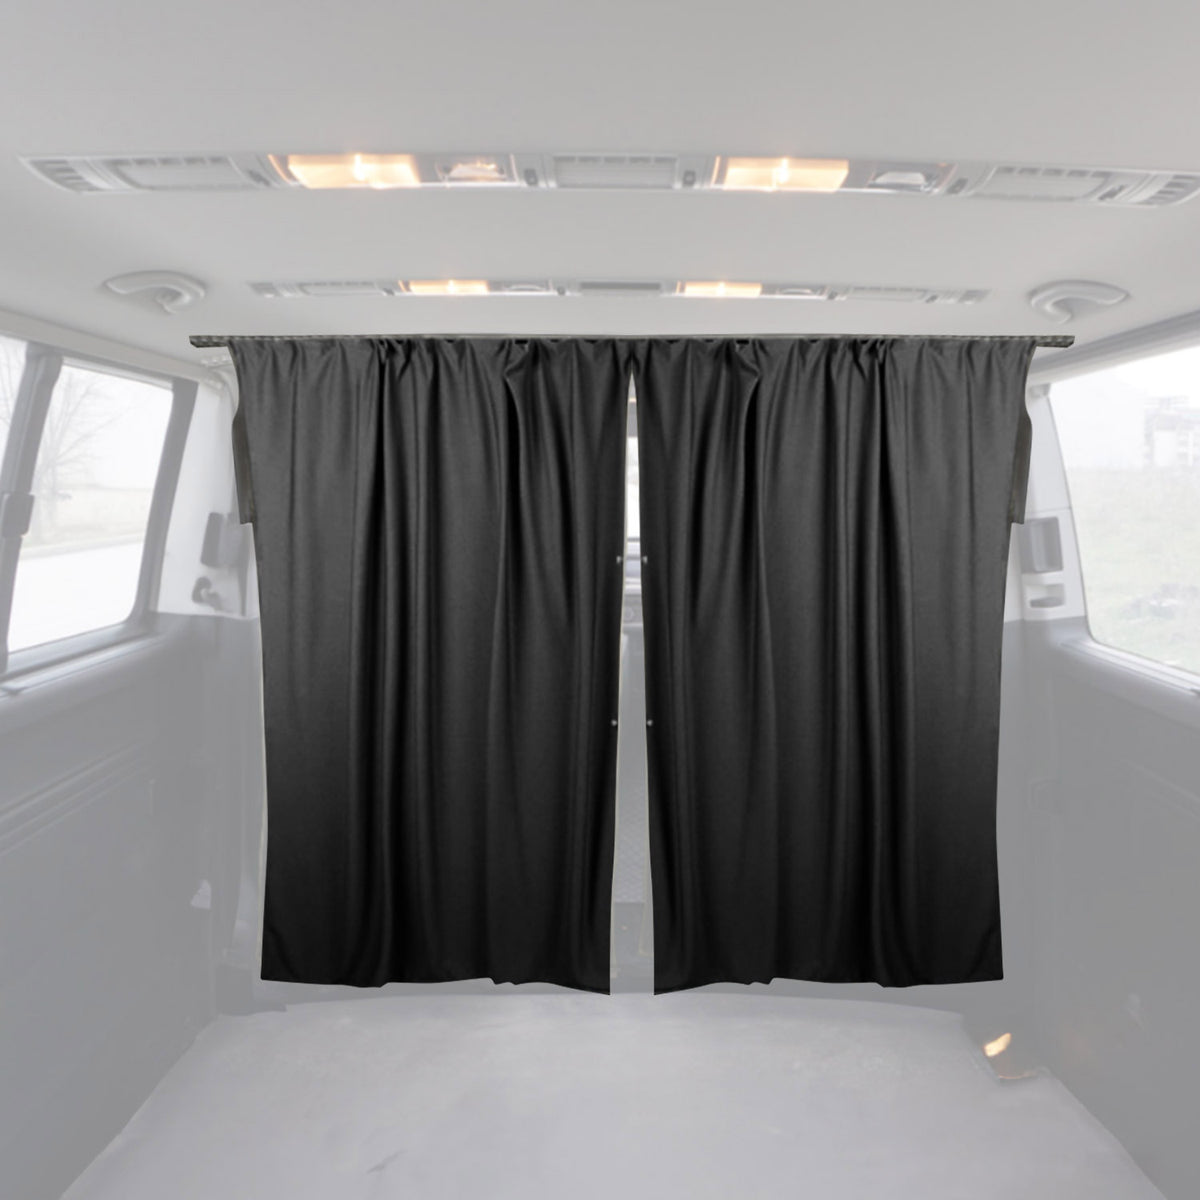 Fahrerhaus Führerhaus Gardinen Sonnenschutz für Ford Transit H3 Schwarz 2tlg